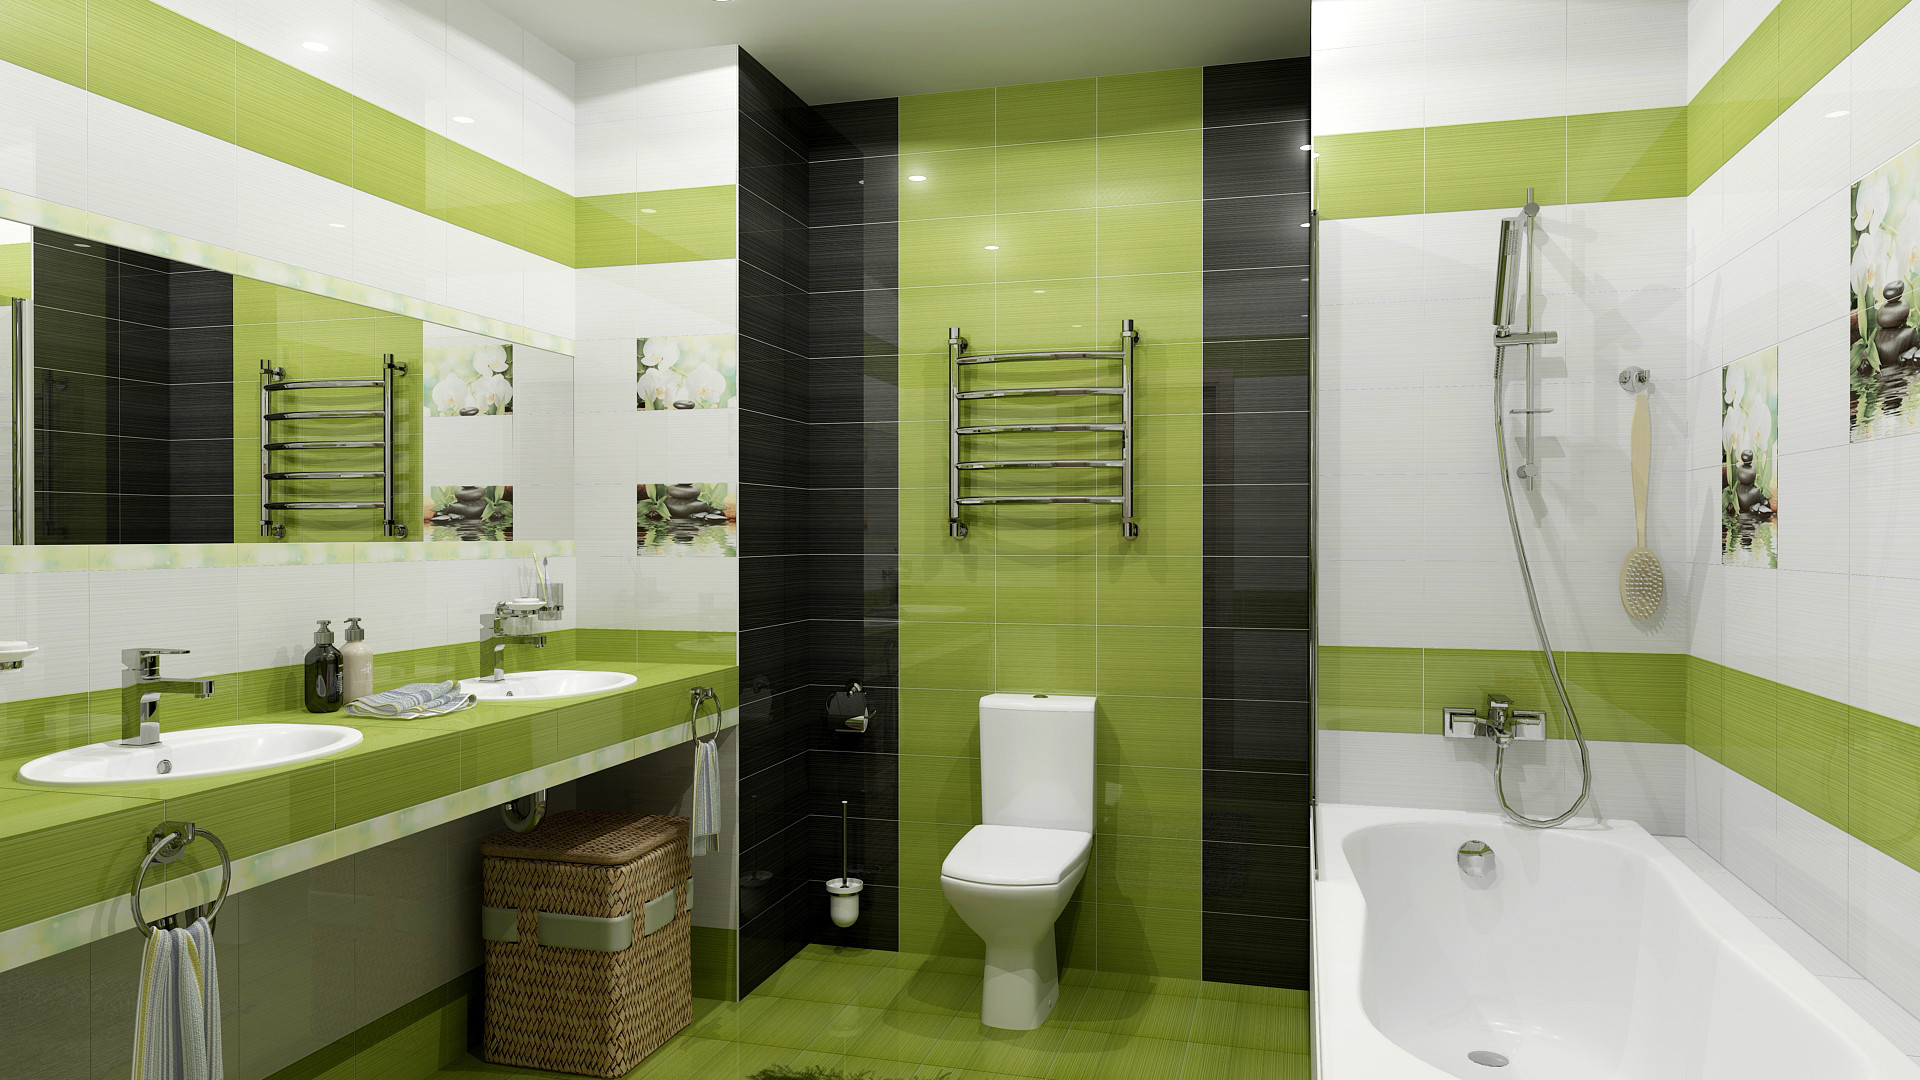 варианты плиток для ванной комнаты фото дизайн